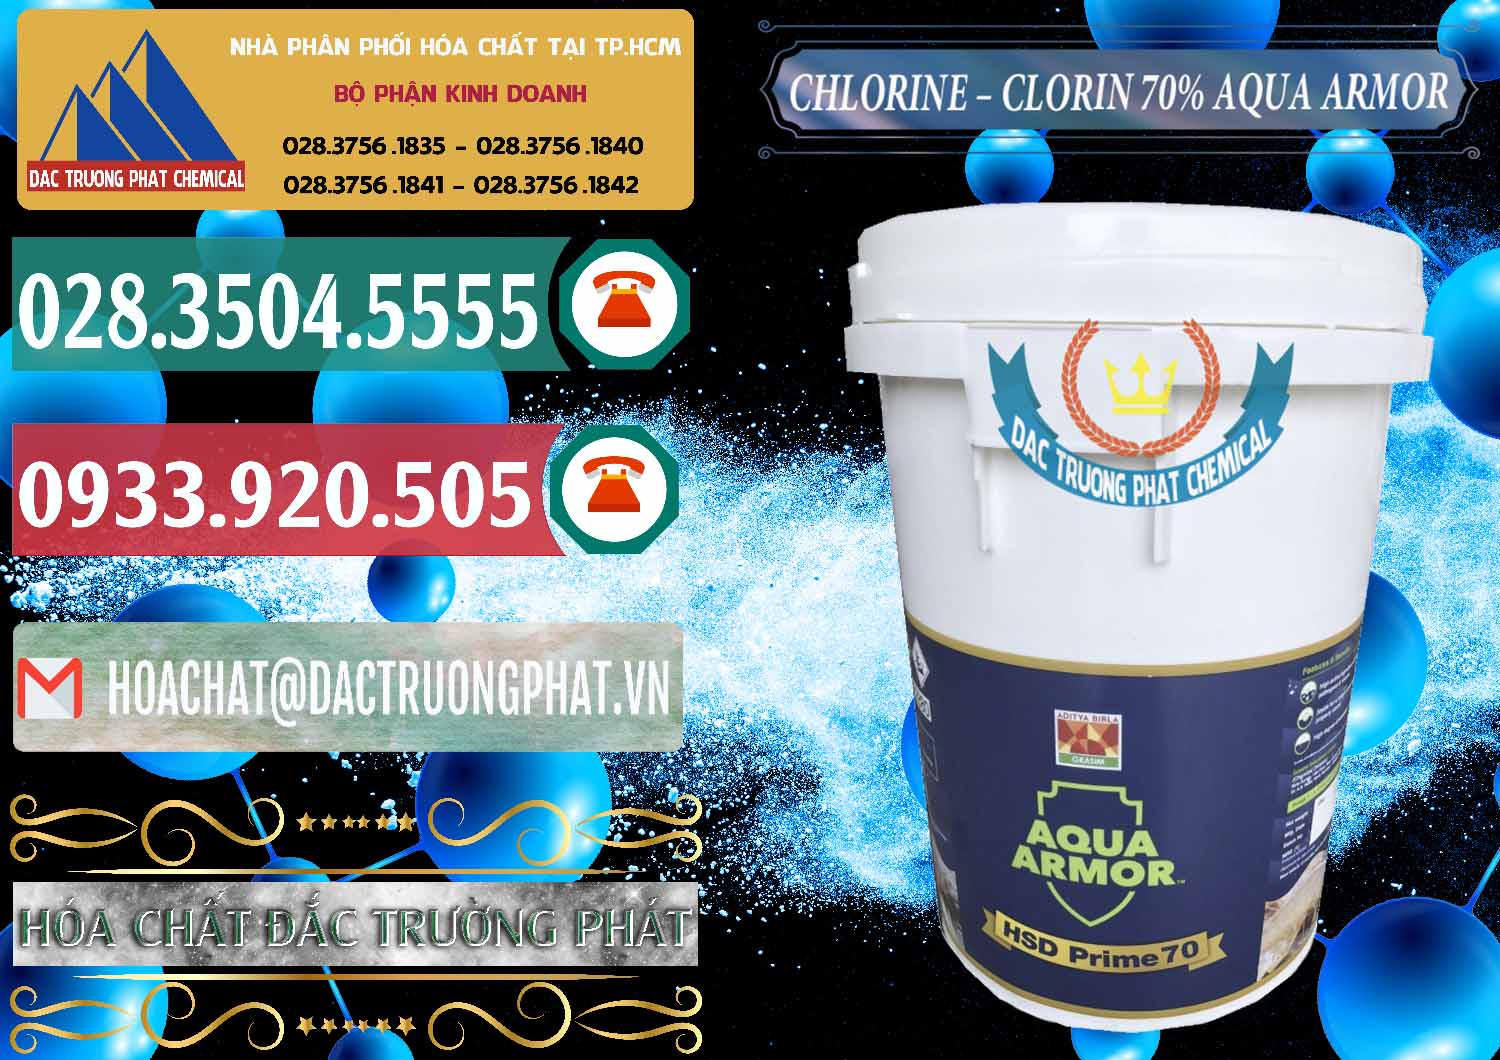 Đơn vị bán và phân phối Chlorine – Clorin 70% Aqua Armor Aditya Birla Grasim Ấn Độ India - 0241 - Chuyên kinh doanh _ cung cấp hóa chất tại TP.HCM - muabanhoachat.vn